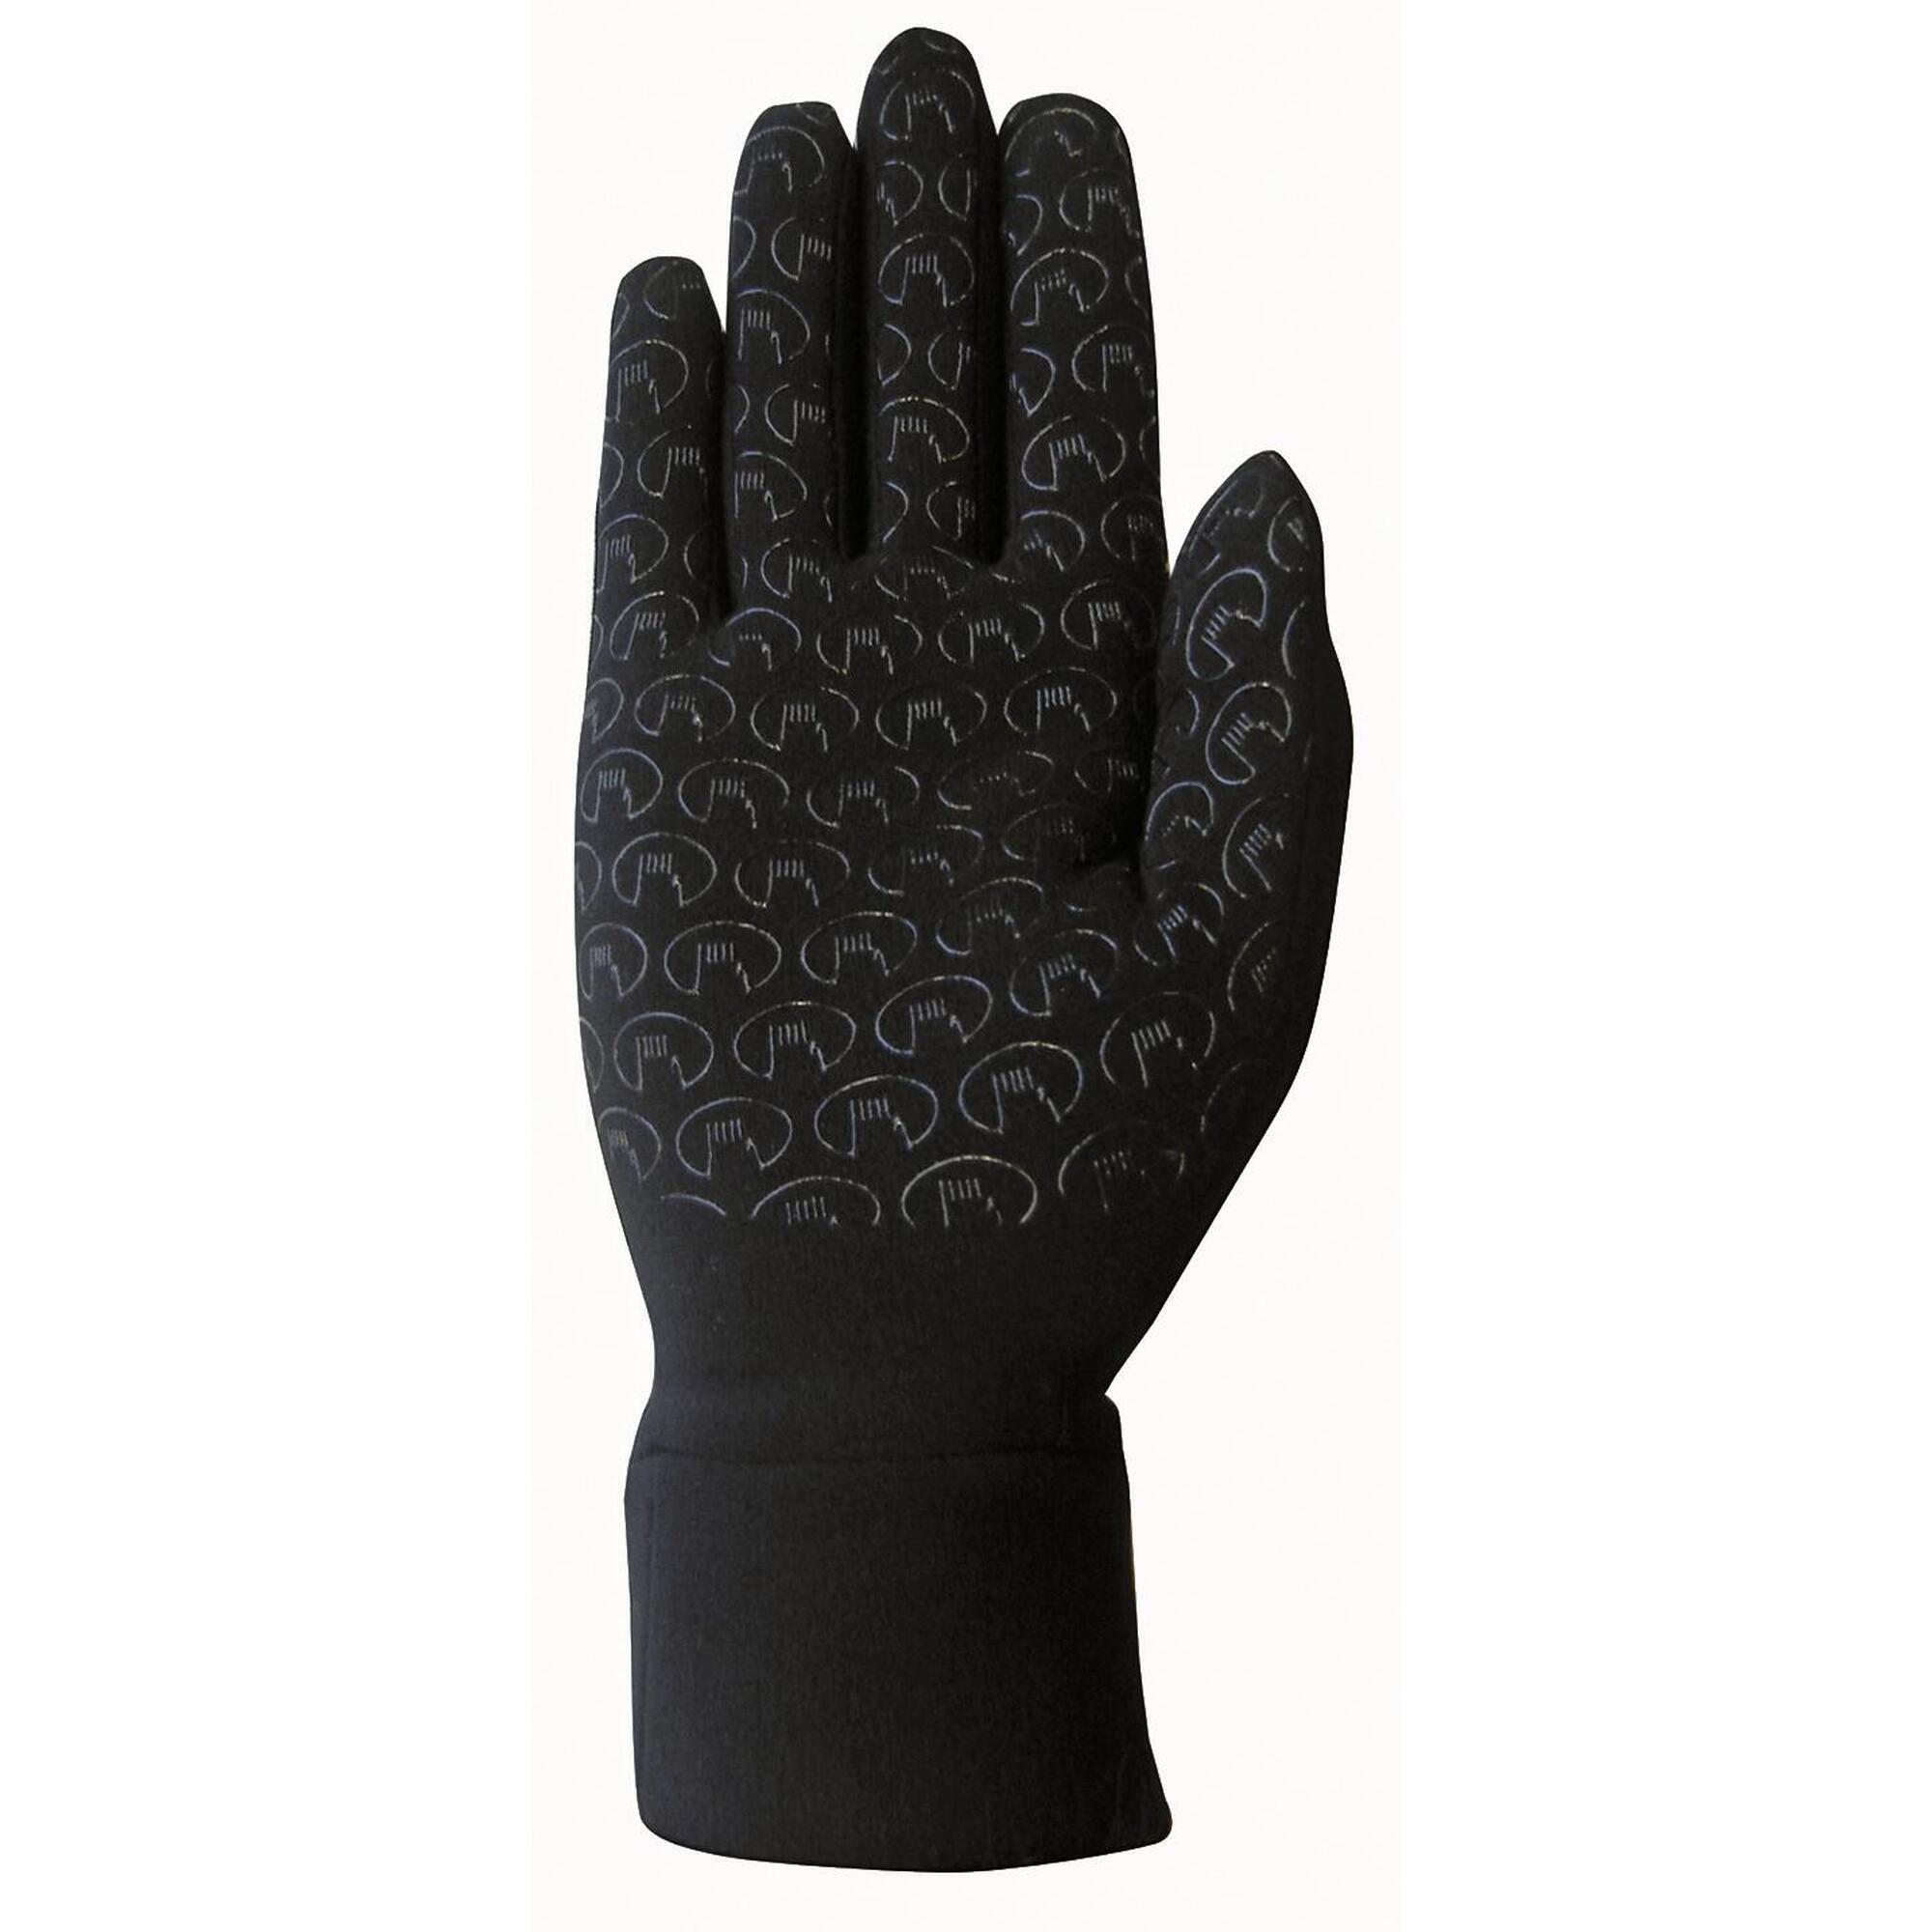 Multifunktionshandschuhe Handschuhe Kasa Erwachsene Roeckl Sports Schwarz